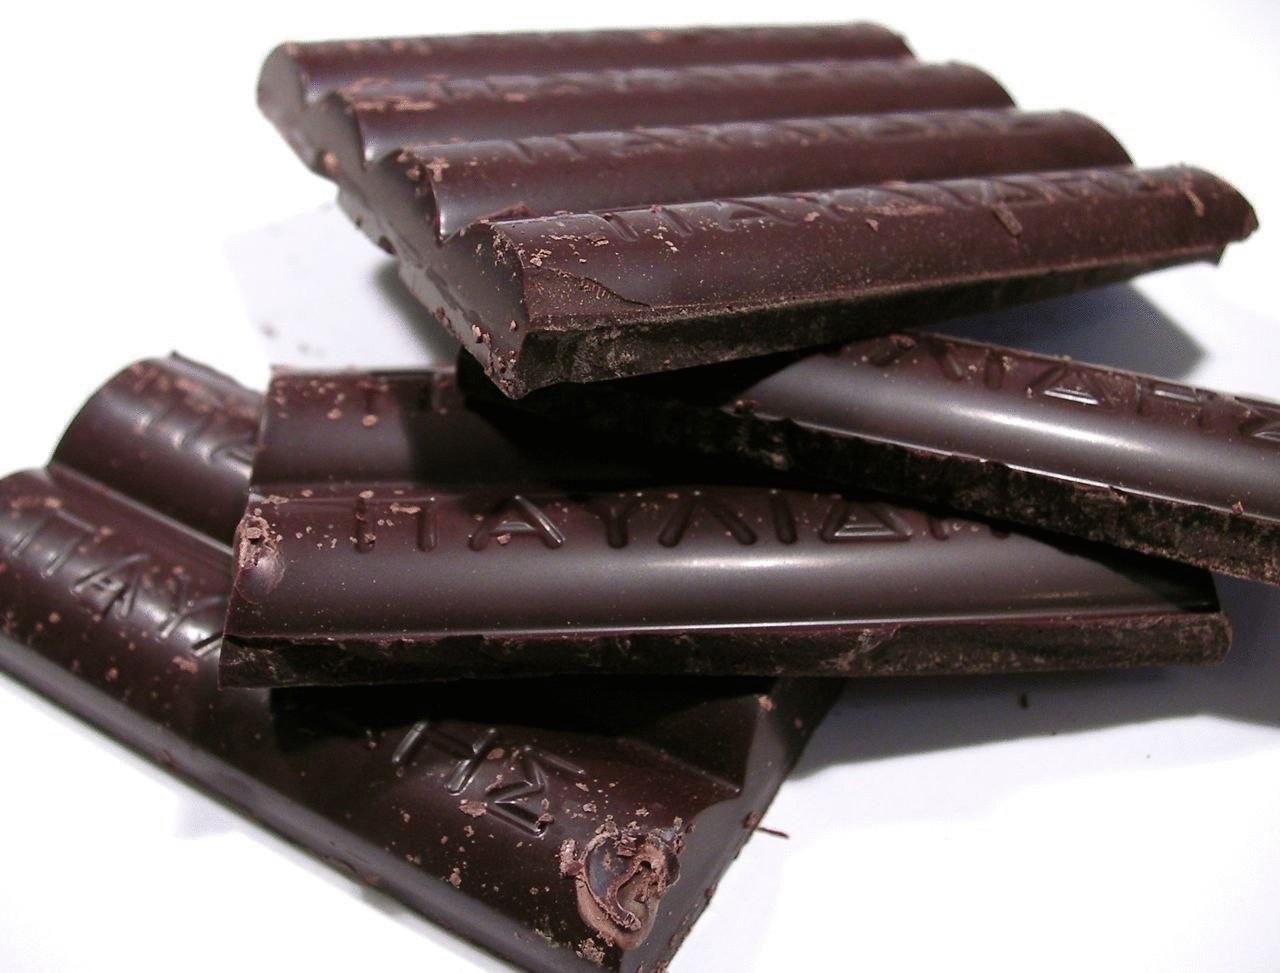 Диета Черный Шоколад